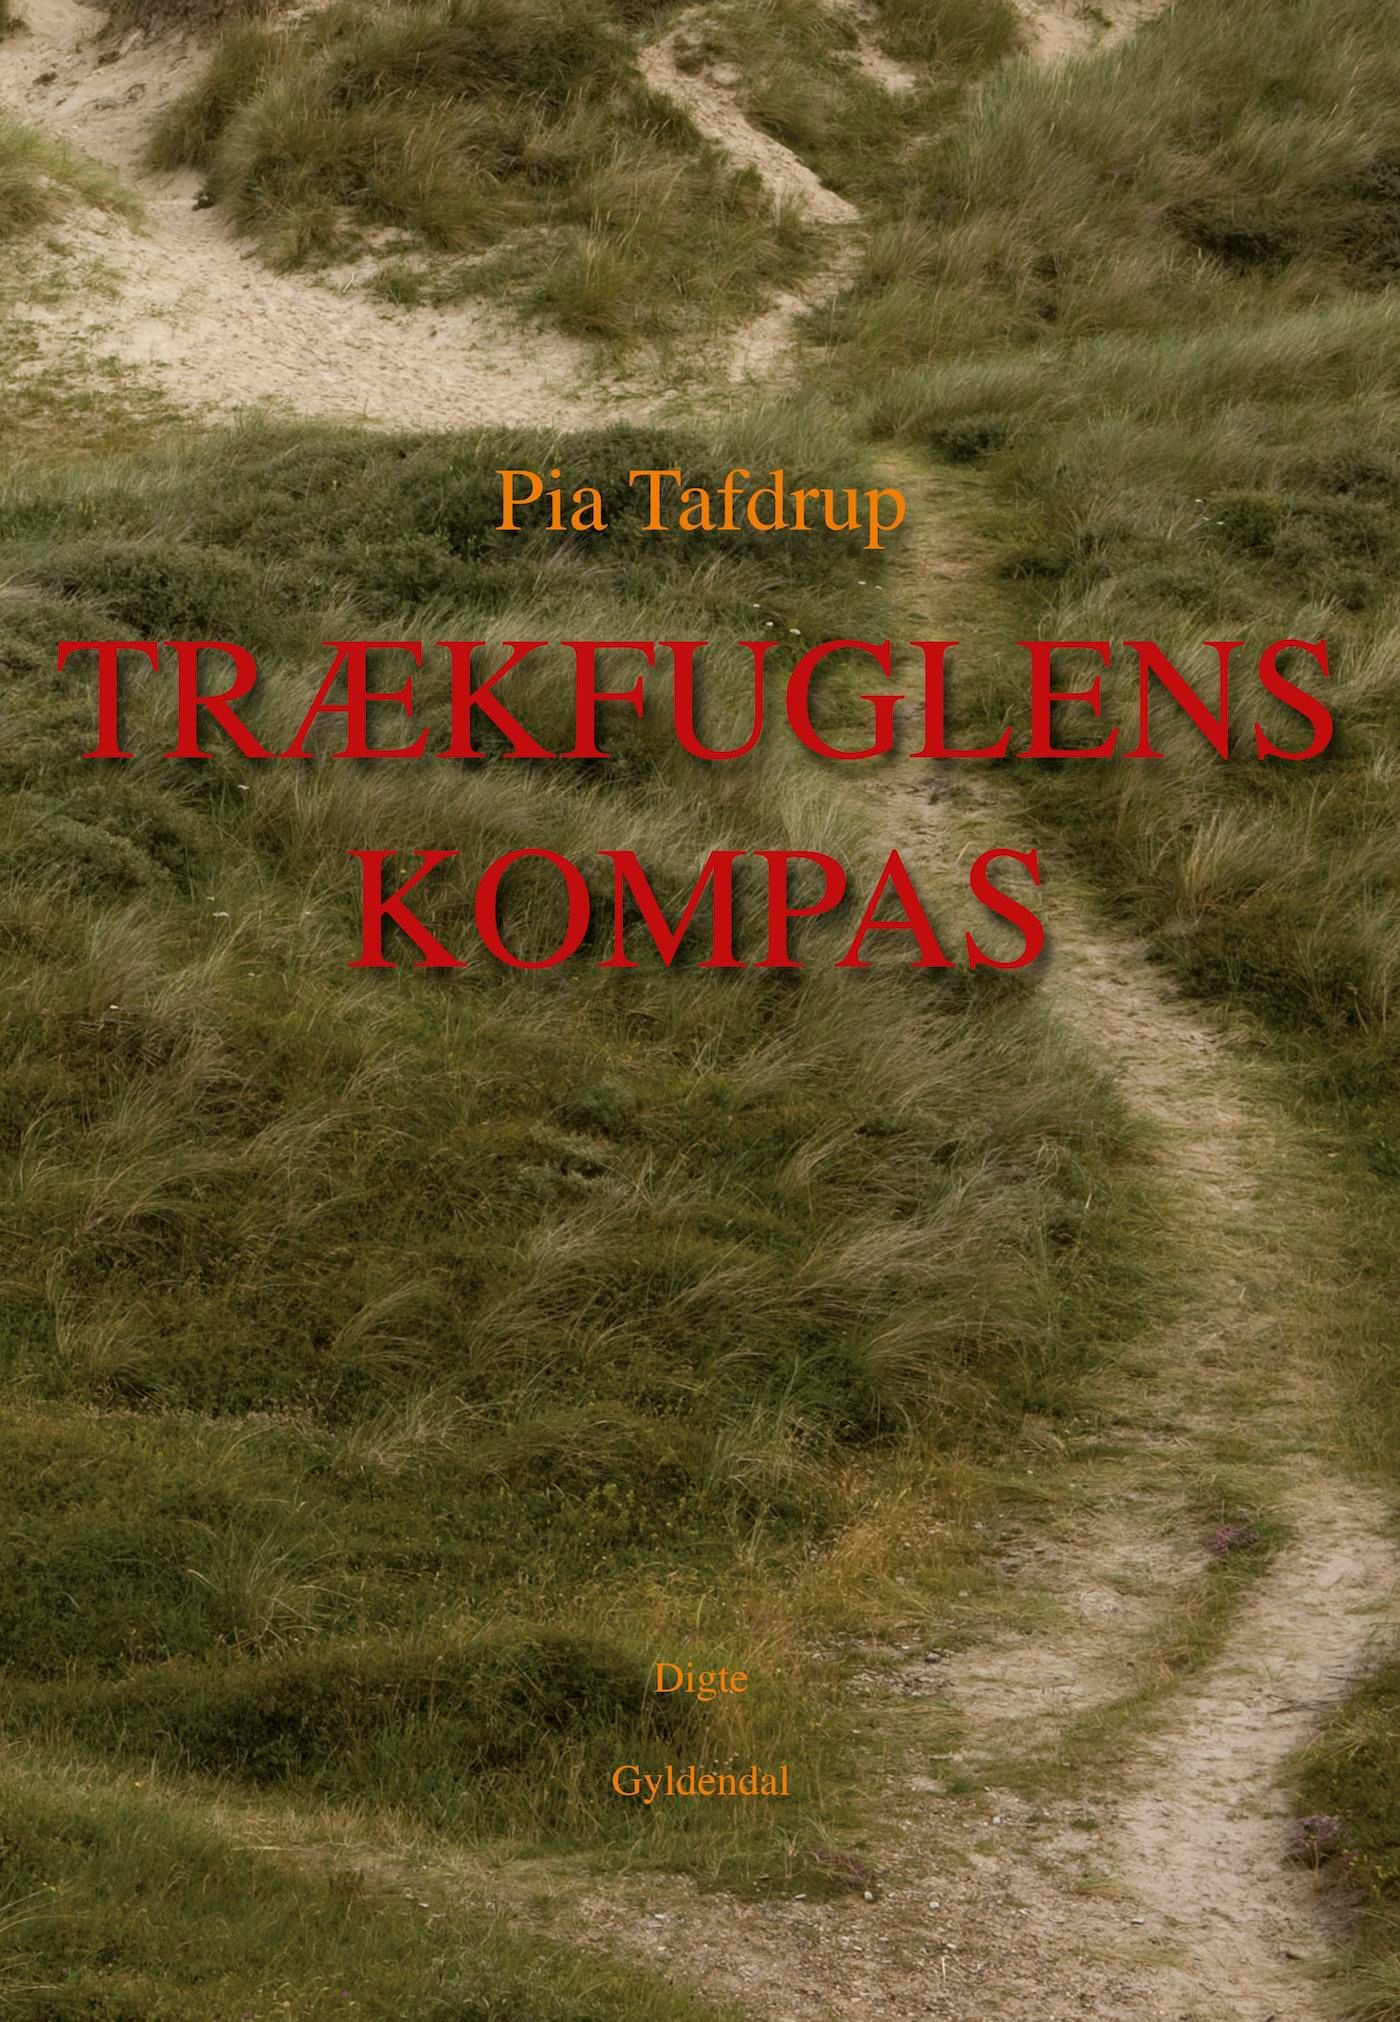 Trækfuglens kompas, e-bok av Pia Tafdrup